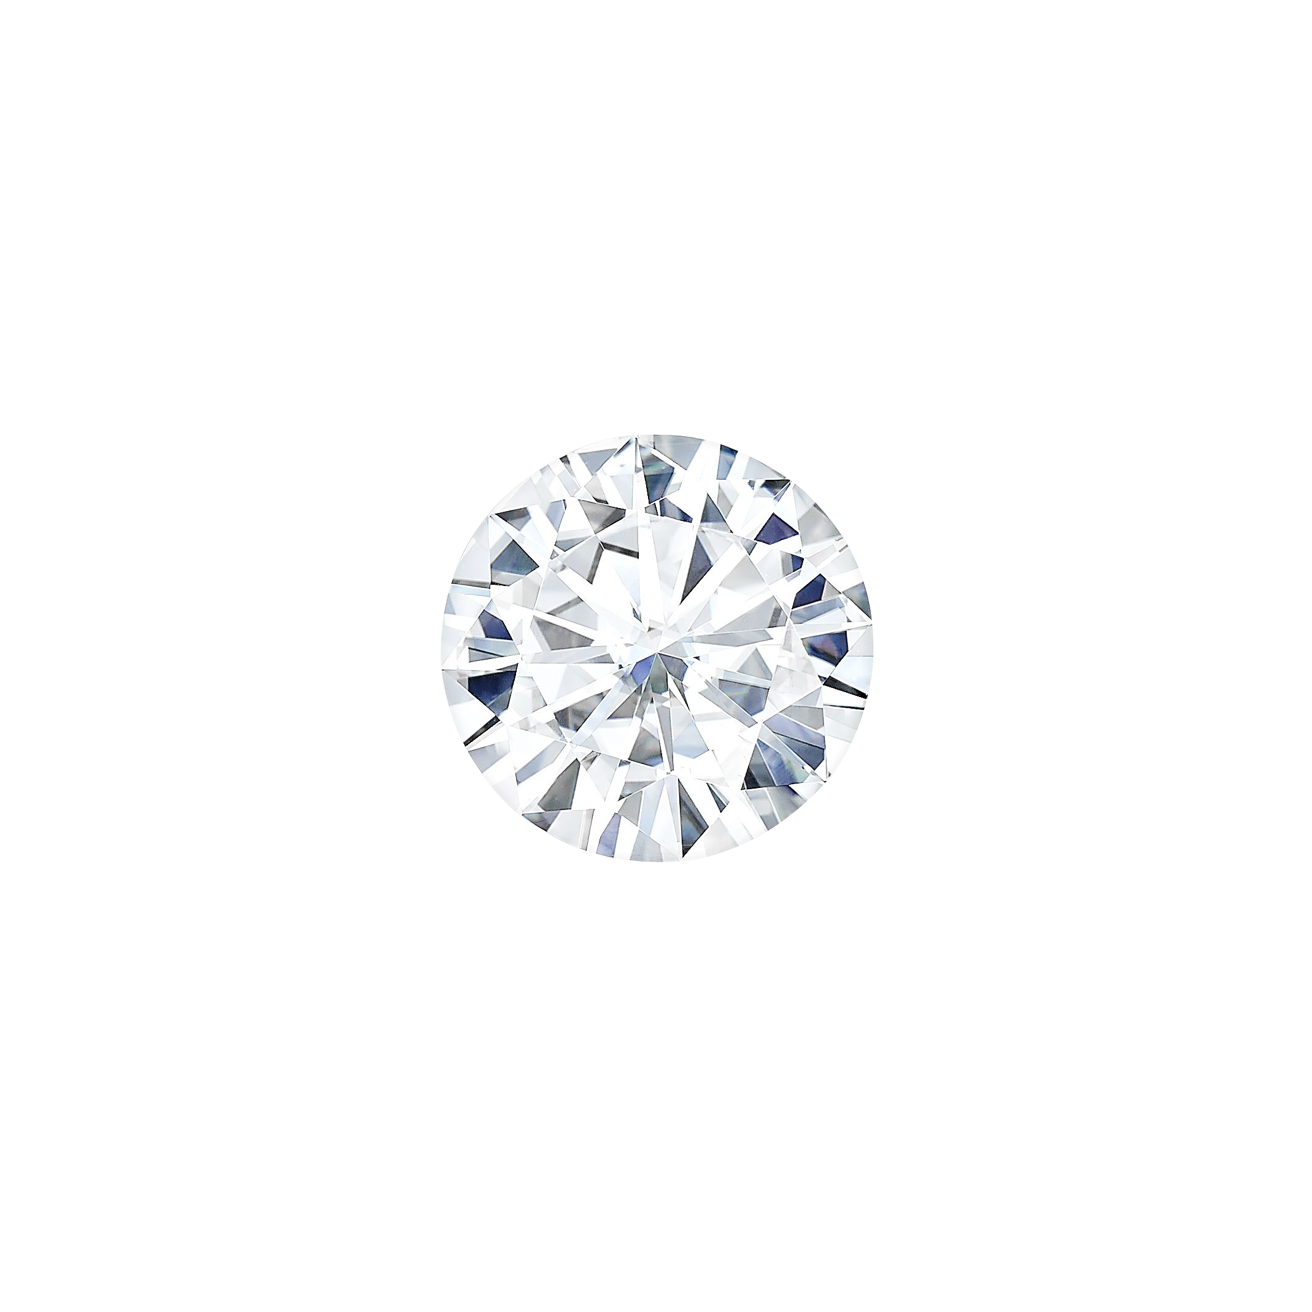 Round diamond loose stone